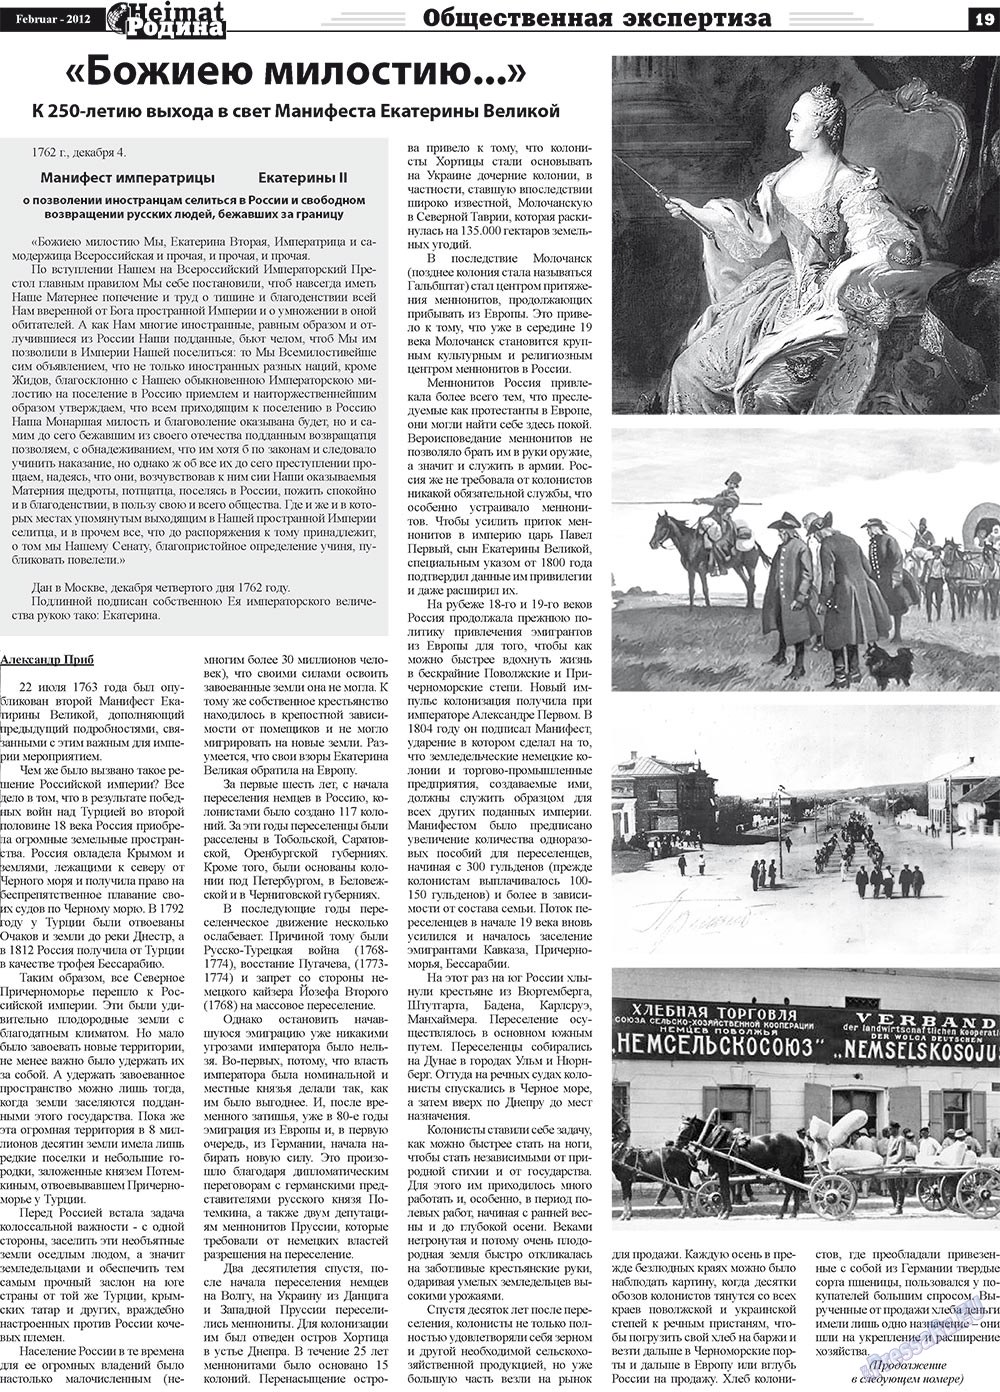 Heimat-Родина (Zeitung). 2012 Jahr, Ausgabe 2, Seite 19